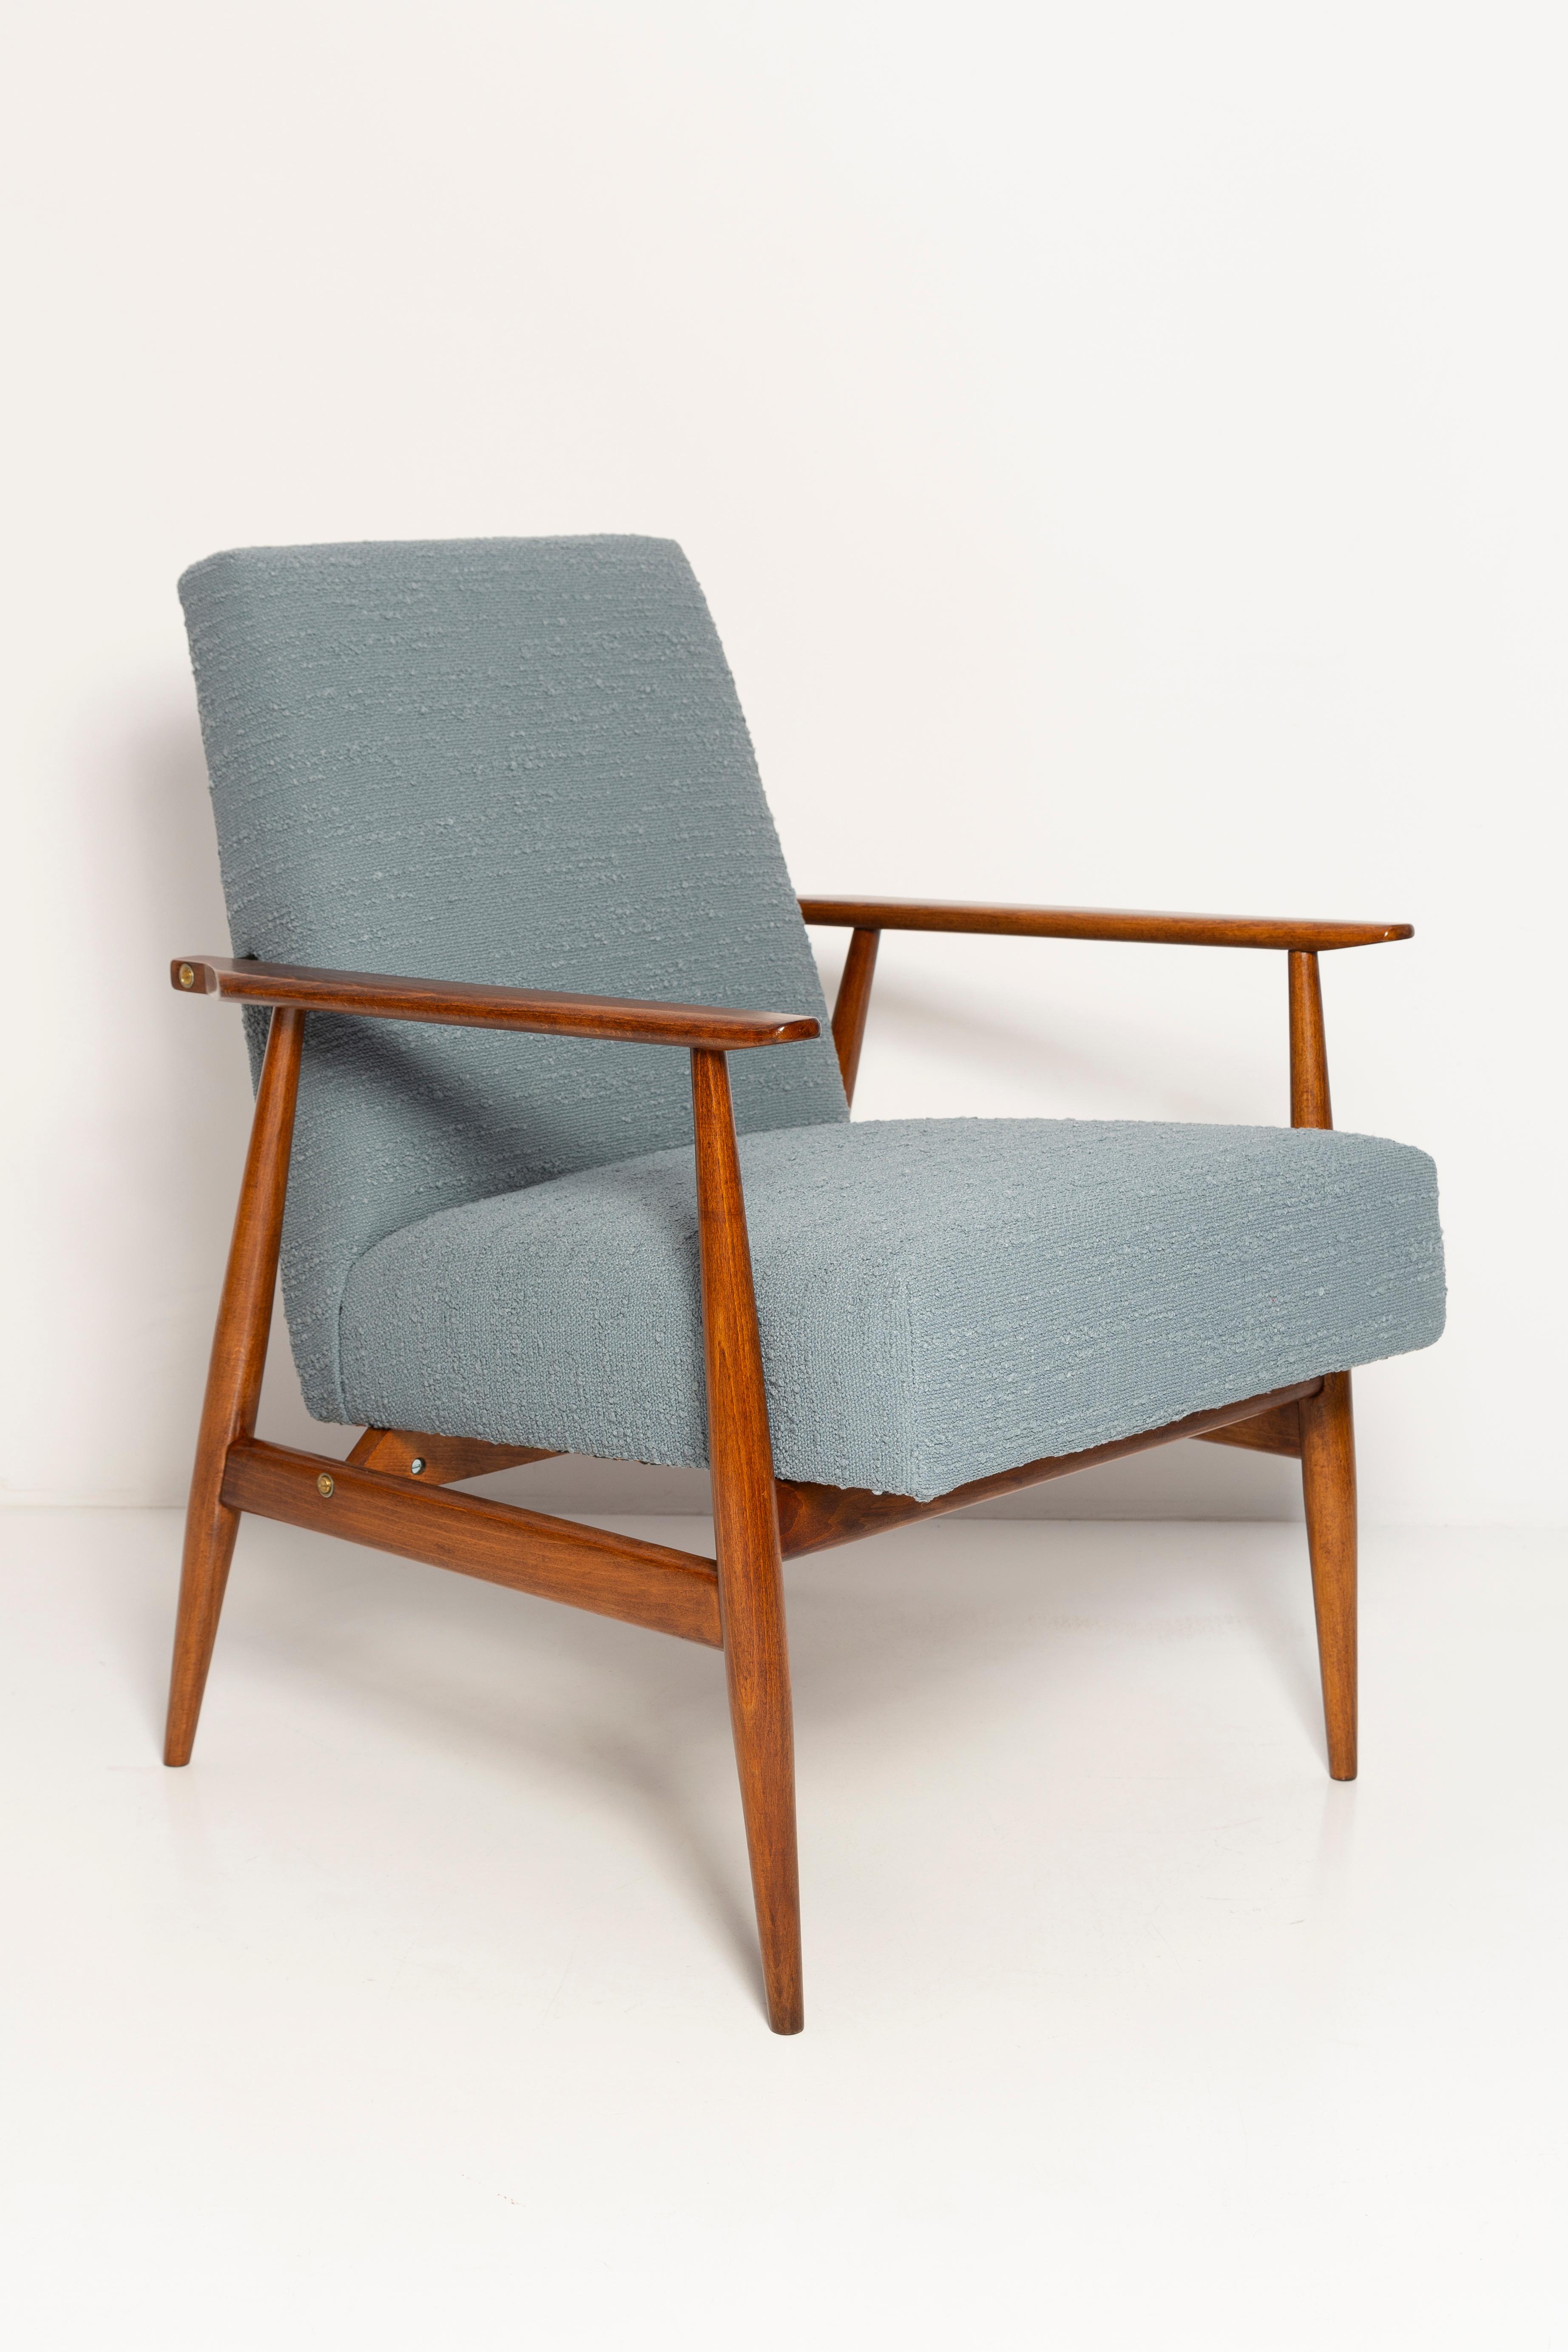 Un beau fauteuil restauré, conçu par Henryk Lis. Meubles après une rénovation complète de la menuiserie et de la tapisserie. Le tissu, qui est recouvert d'un dossier et d'une assise, est un revêtement mélangé italien de haute qualité de couleur